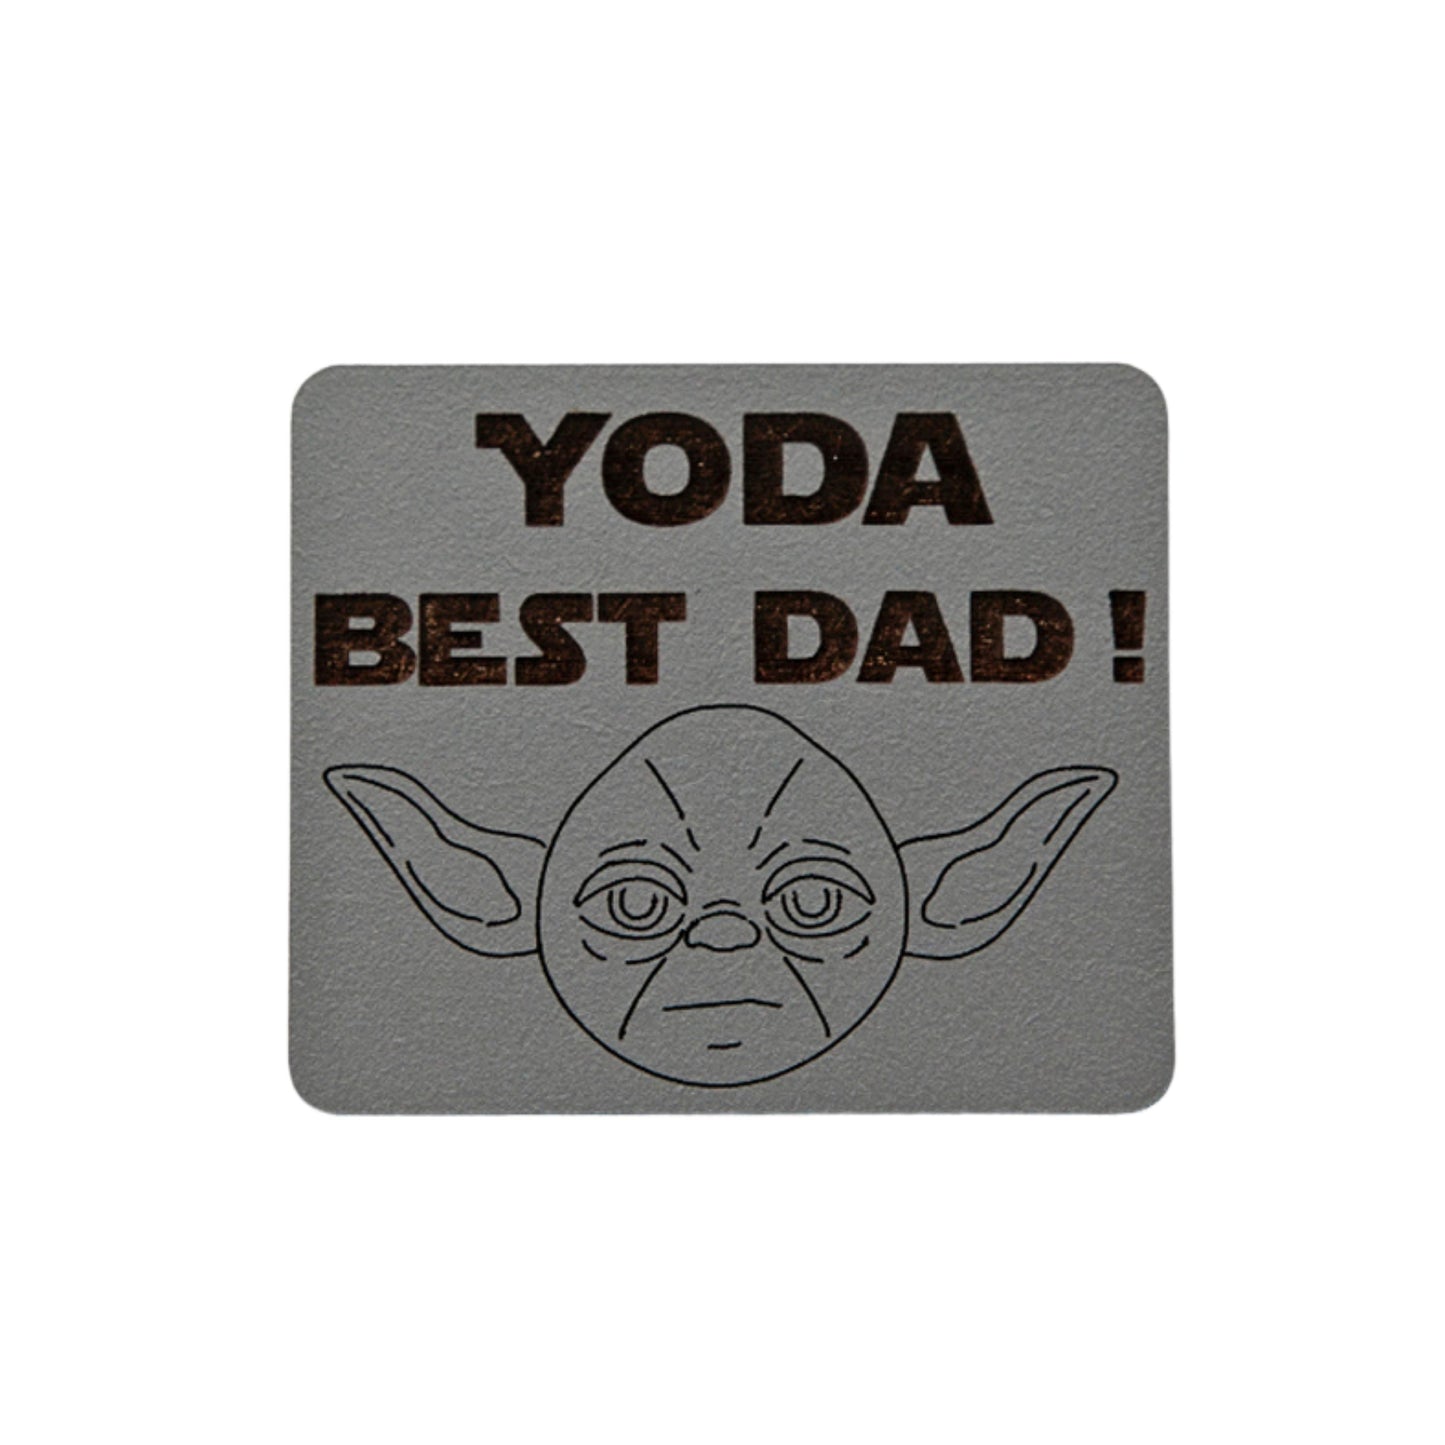 Yoda Best Dad! Wooden Magnet